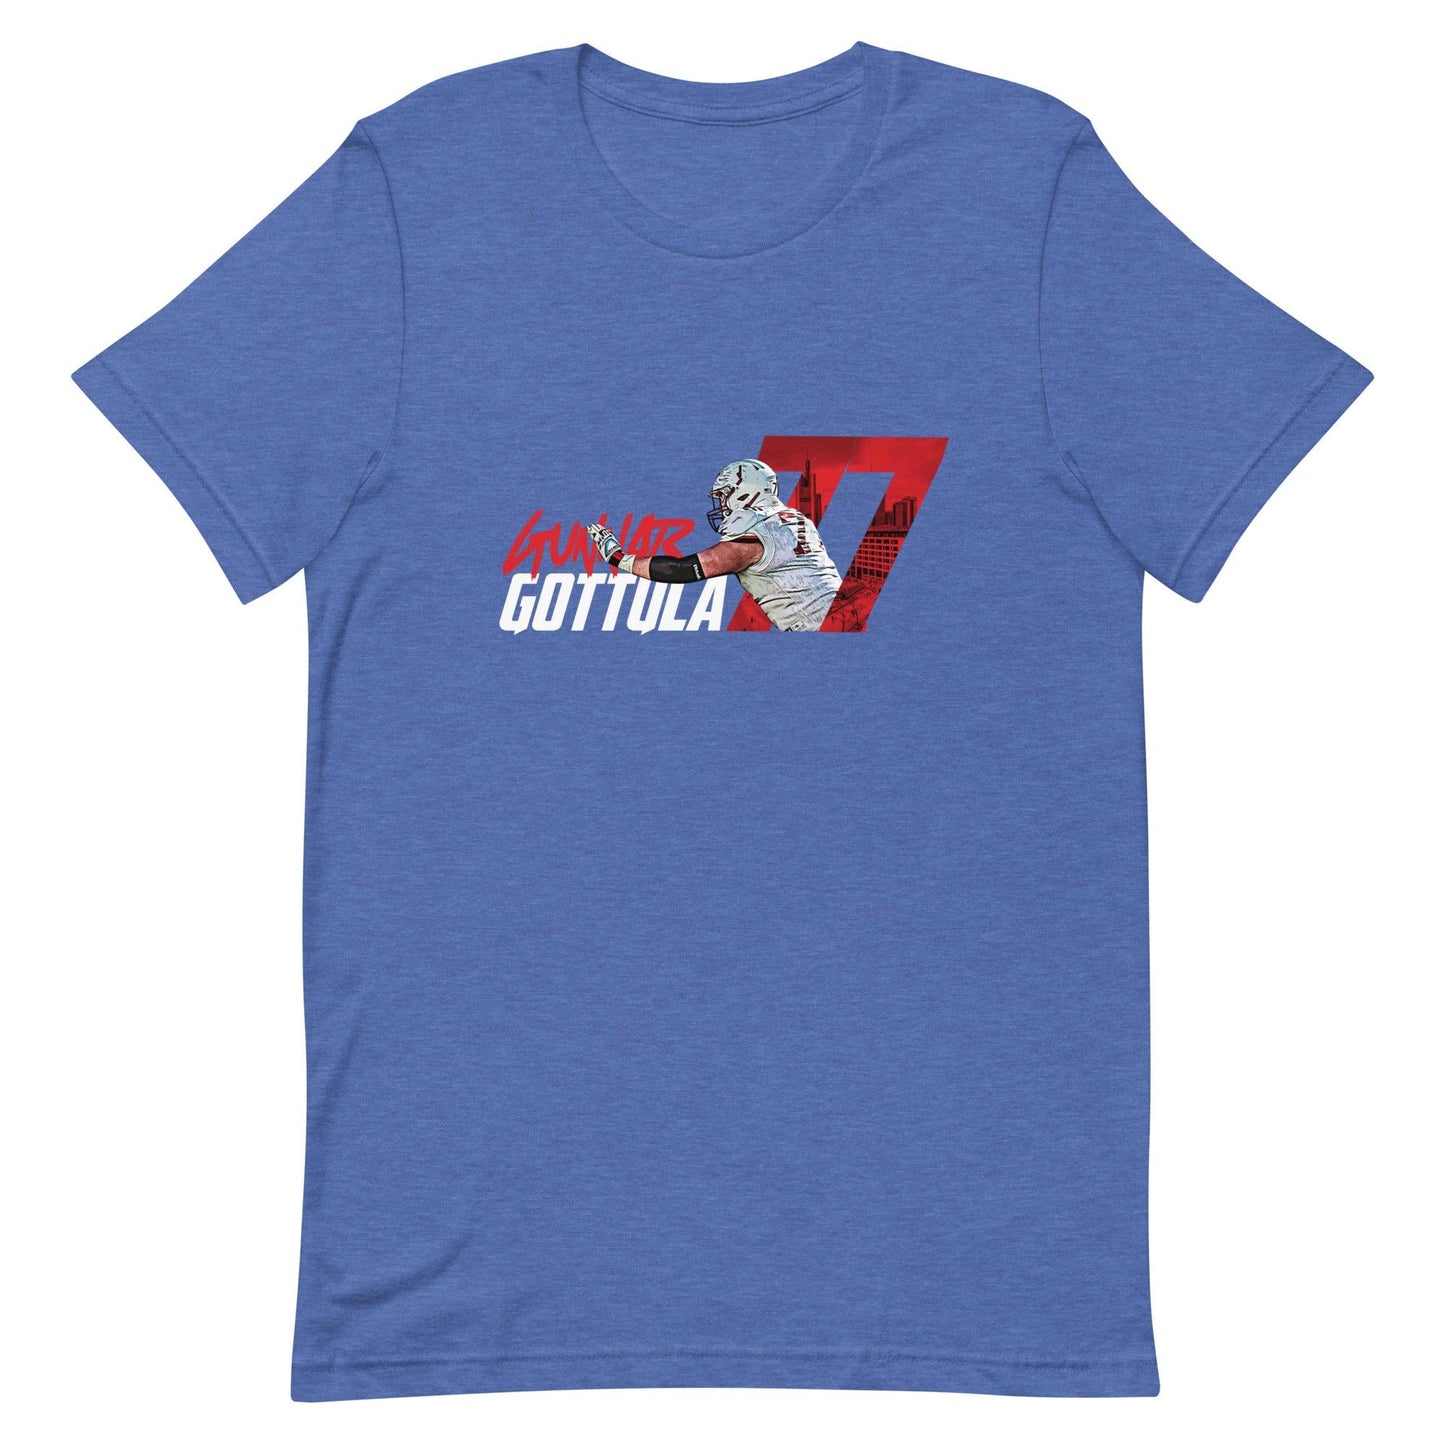 Gunnar Gottula "Gameday" t-shirt - Fan Arch